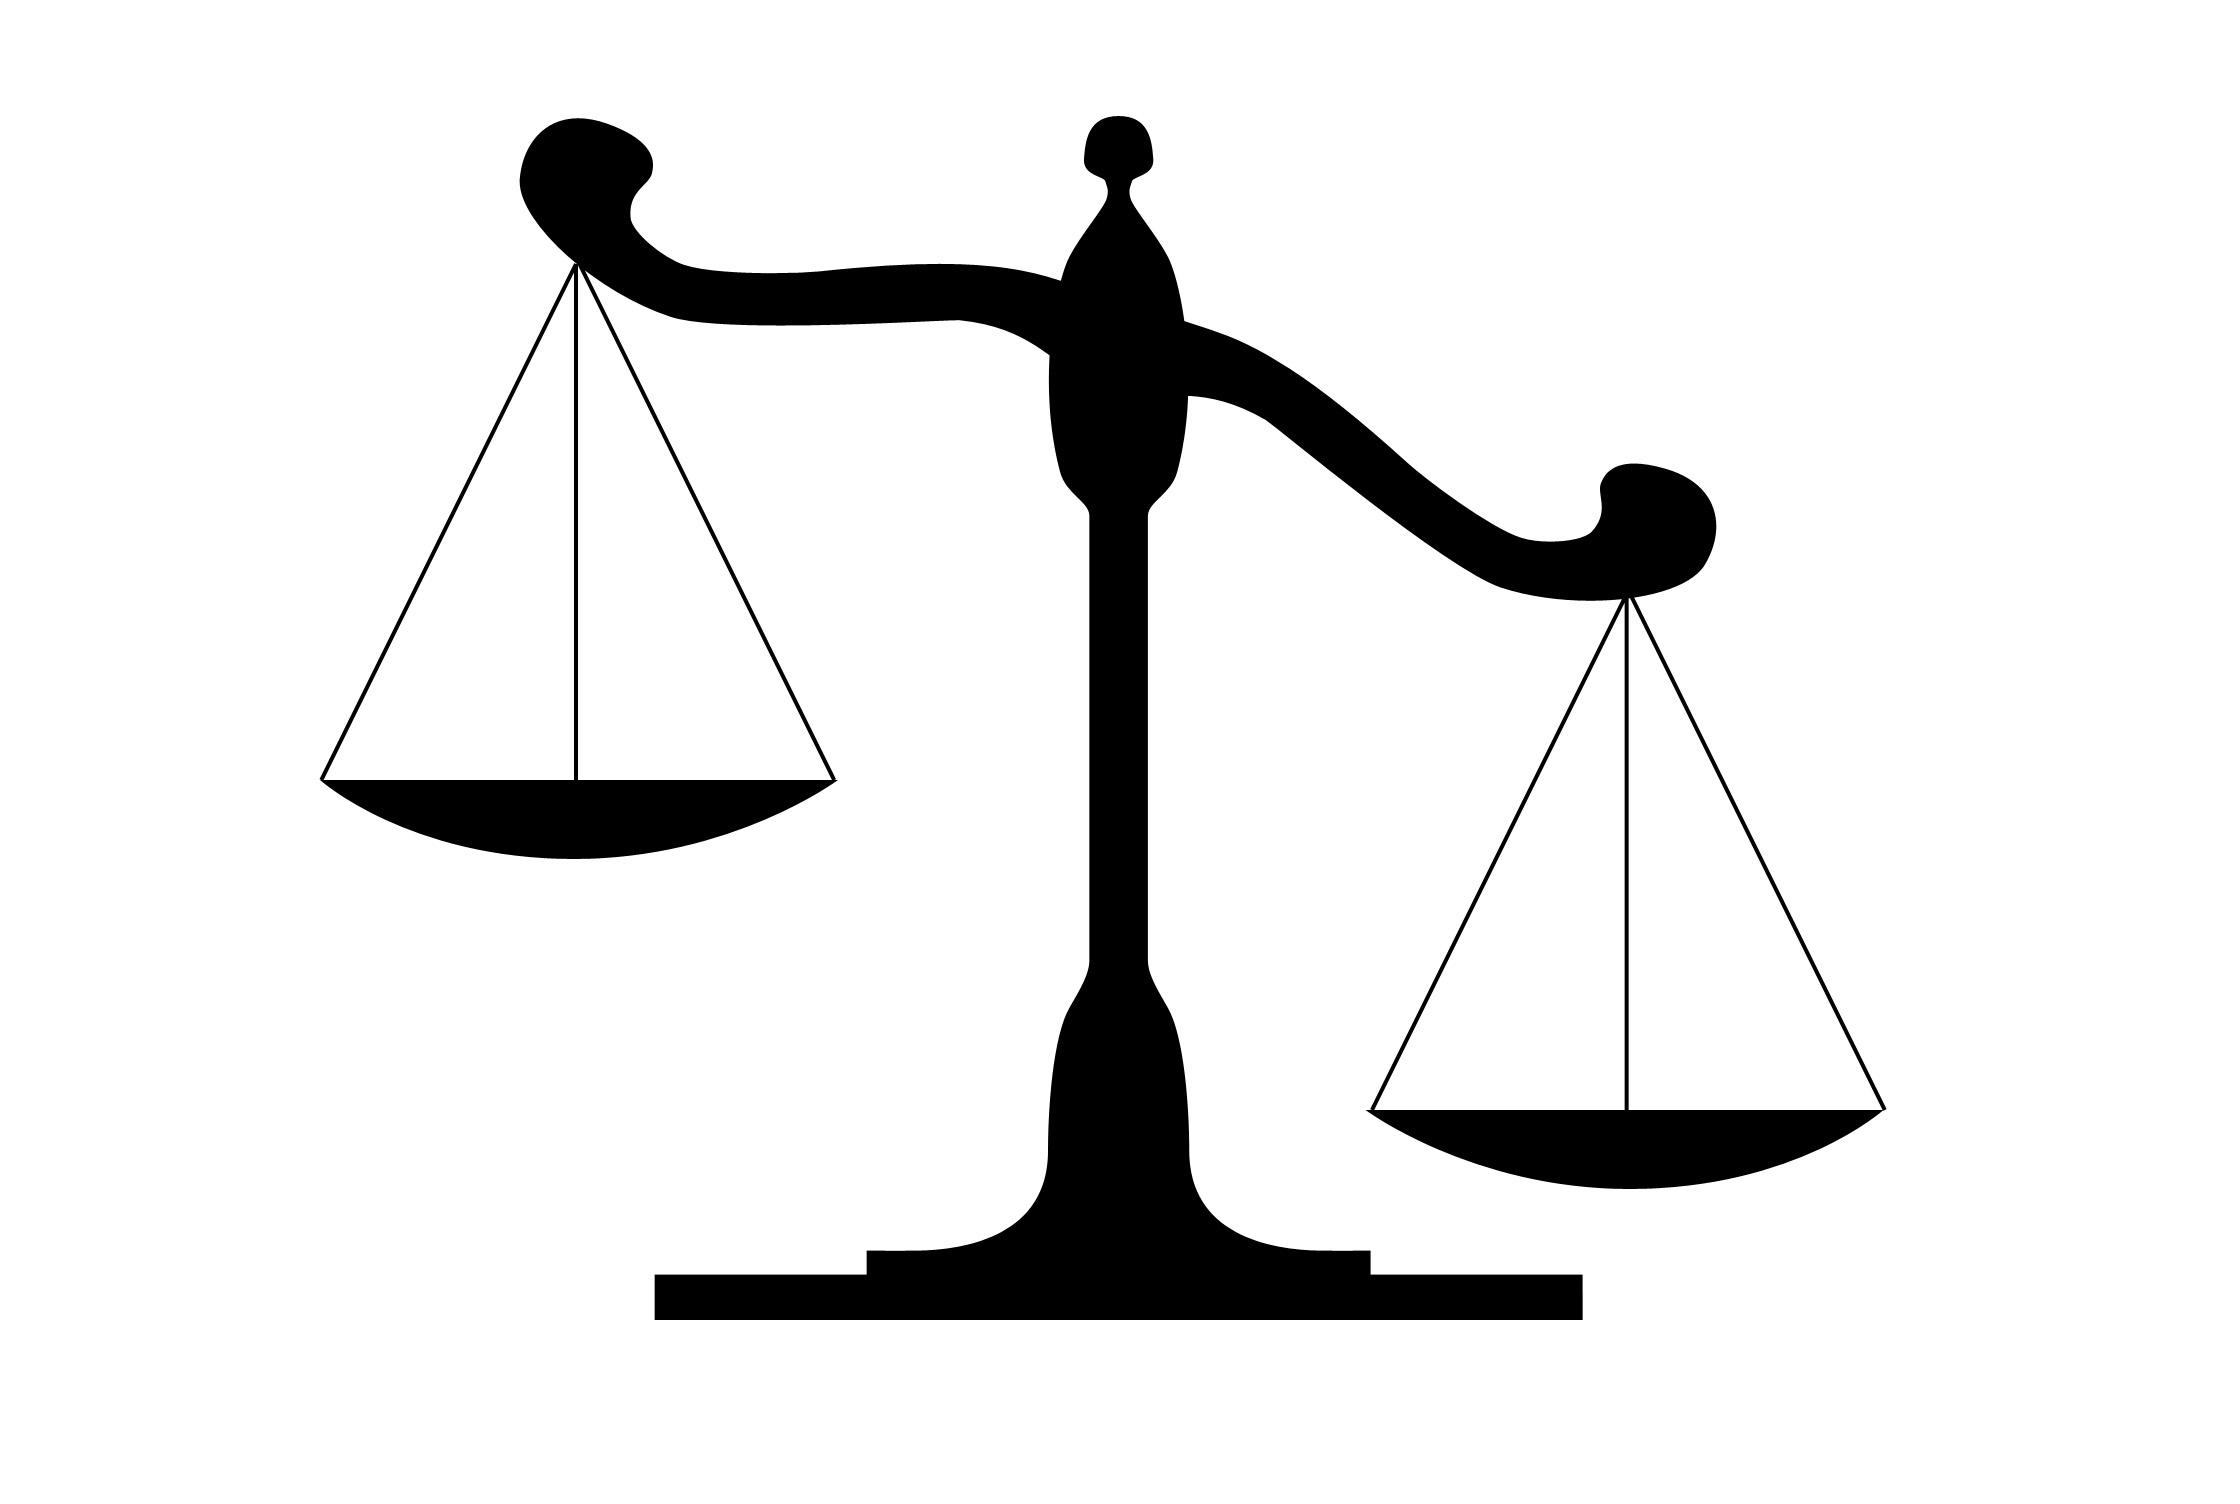 Судовой баланс федерального суда США